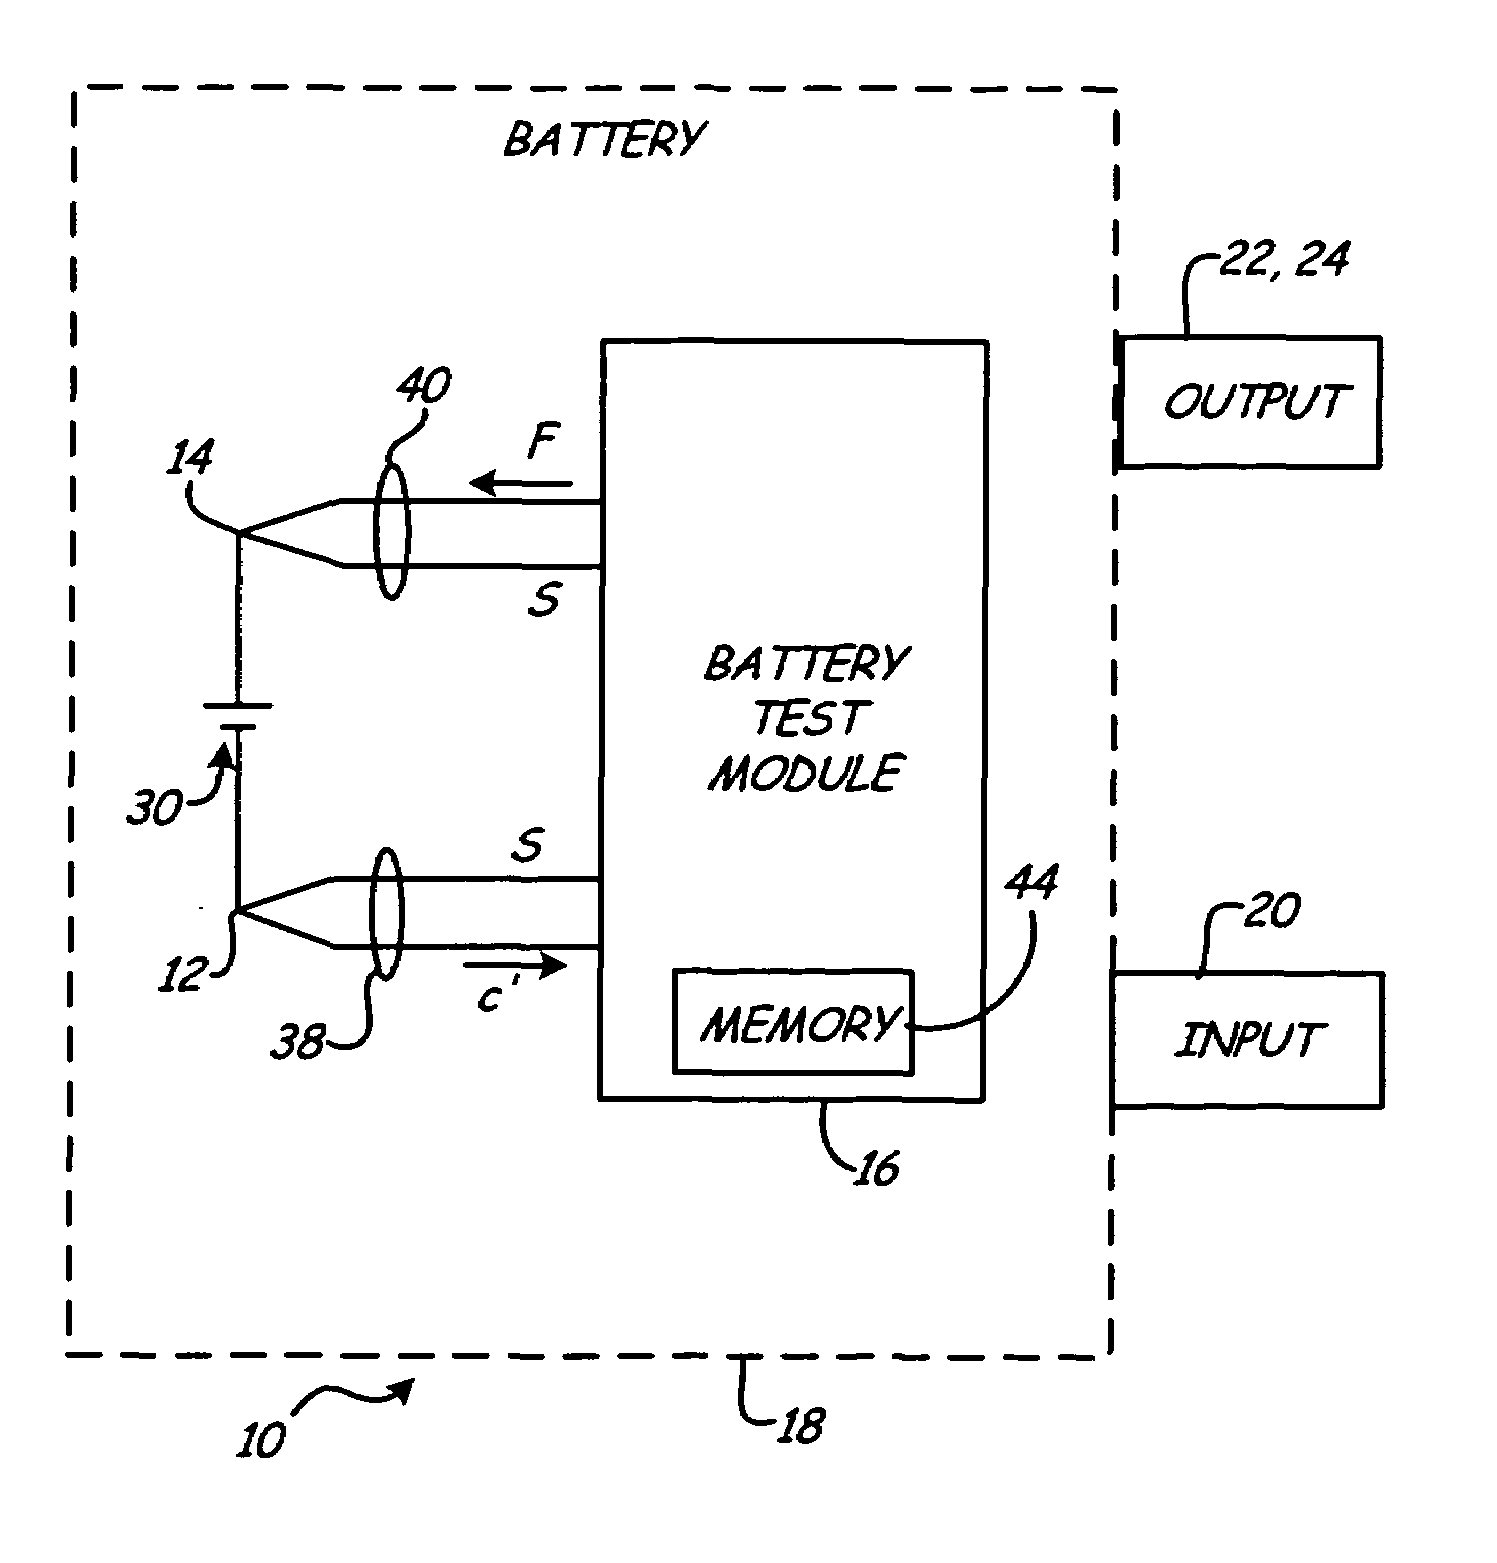 Battery test module